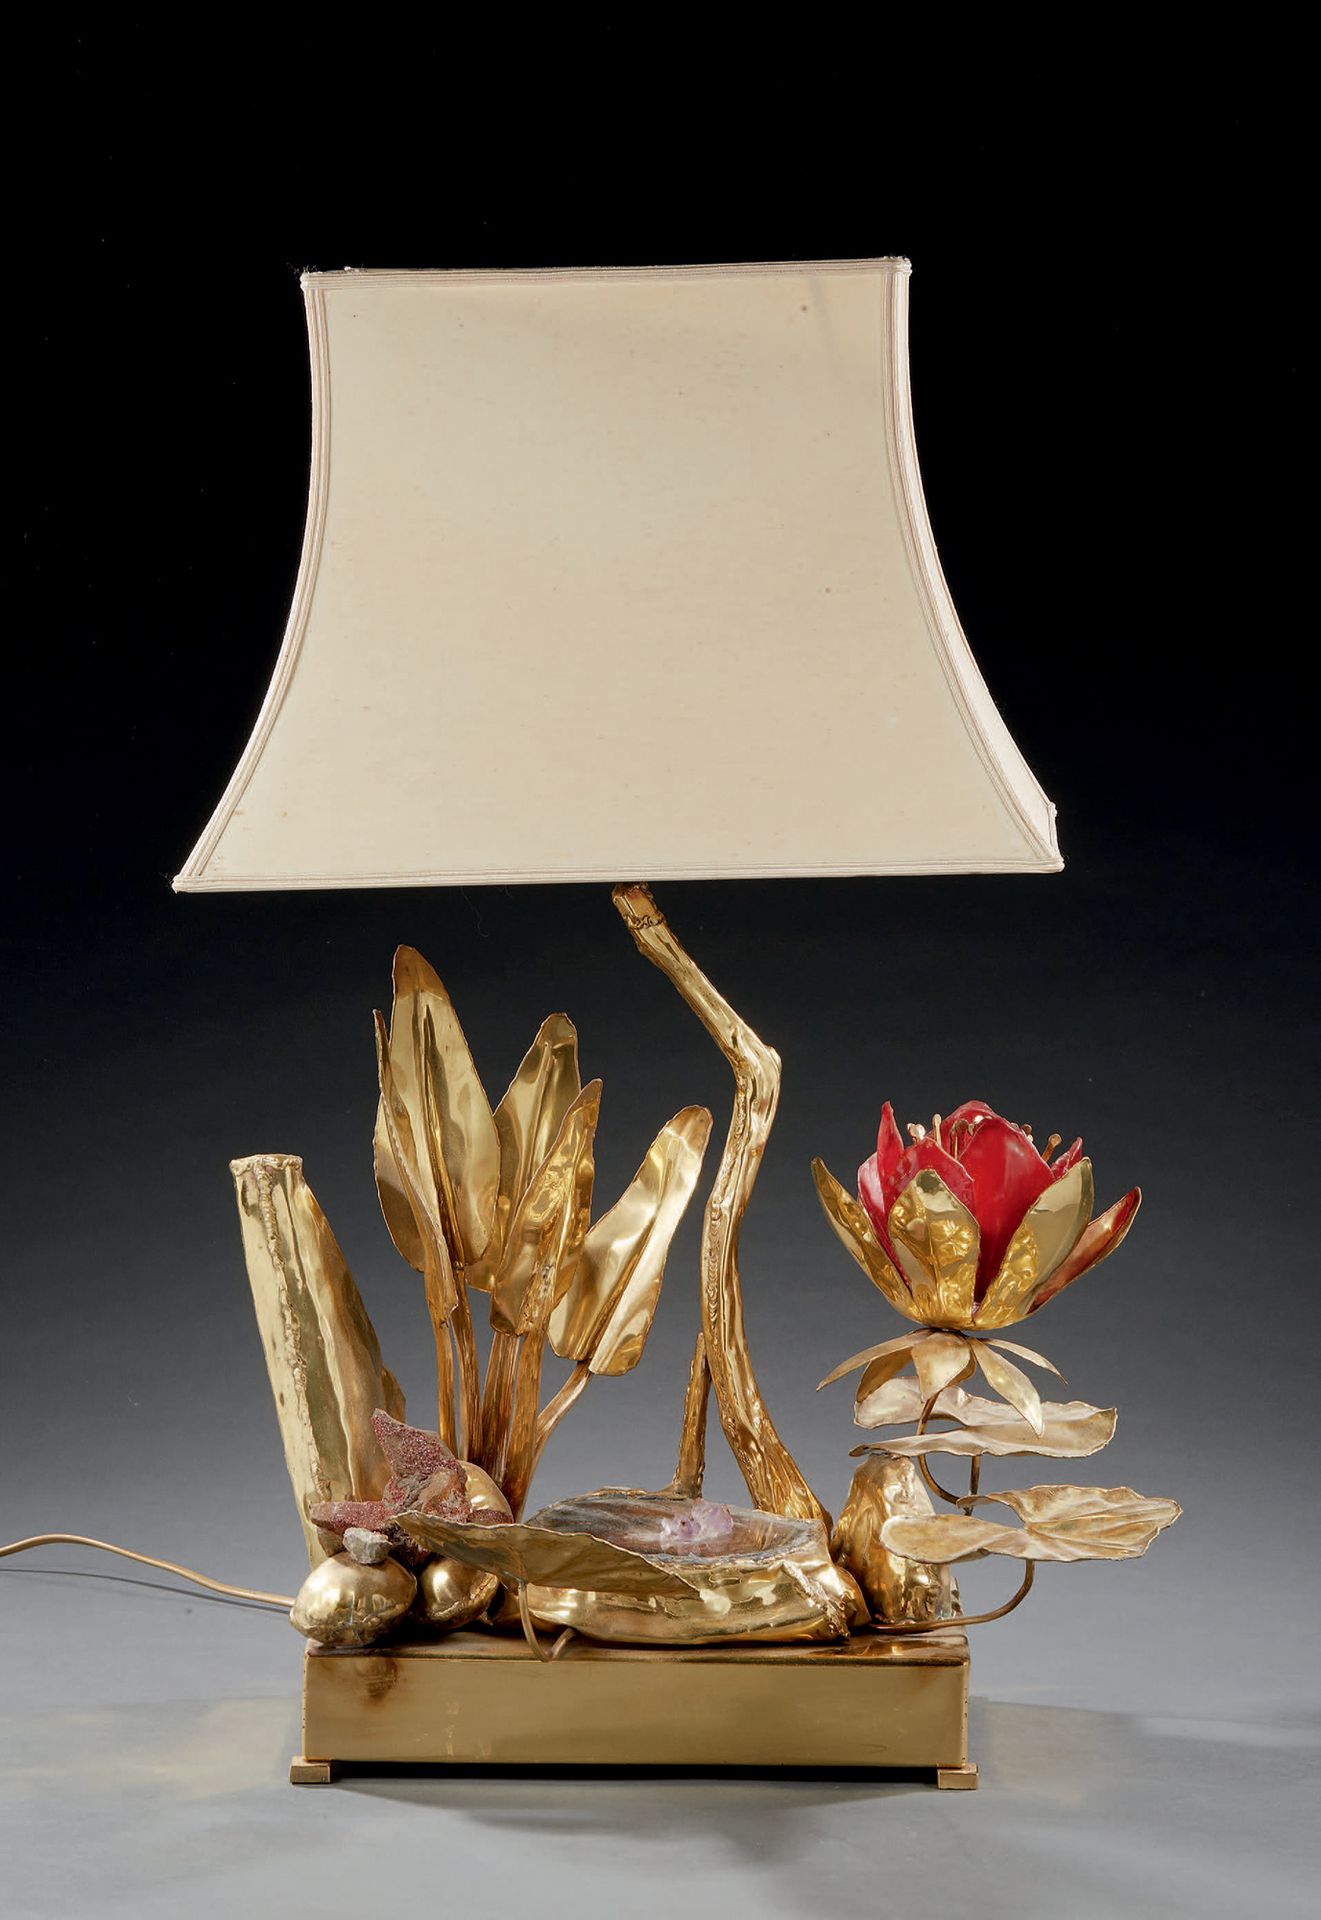 TRAVAIL DES ANNÉES 1970 
Lampe en métal doré, pierre dure et verre rouge à décor&hellip;